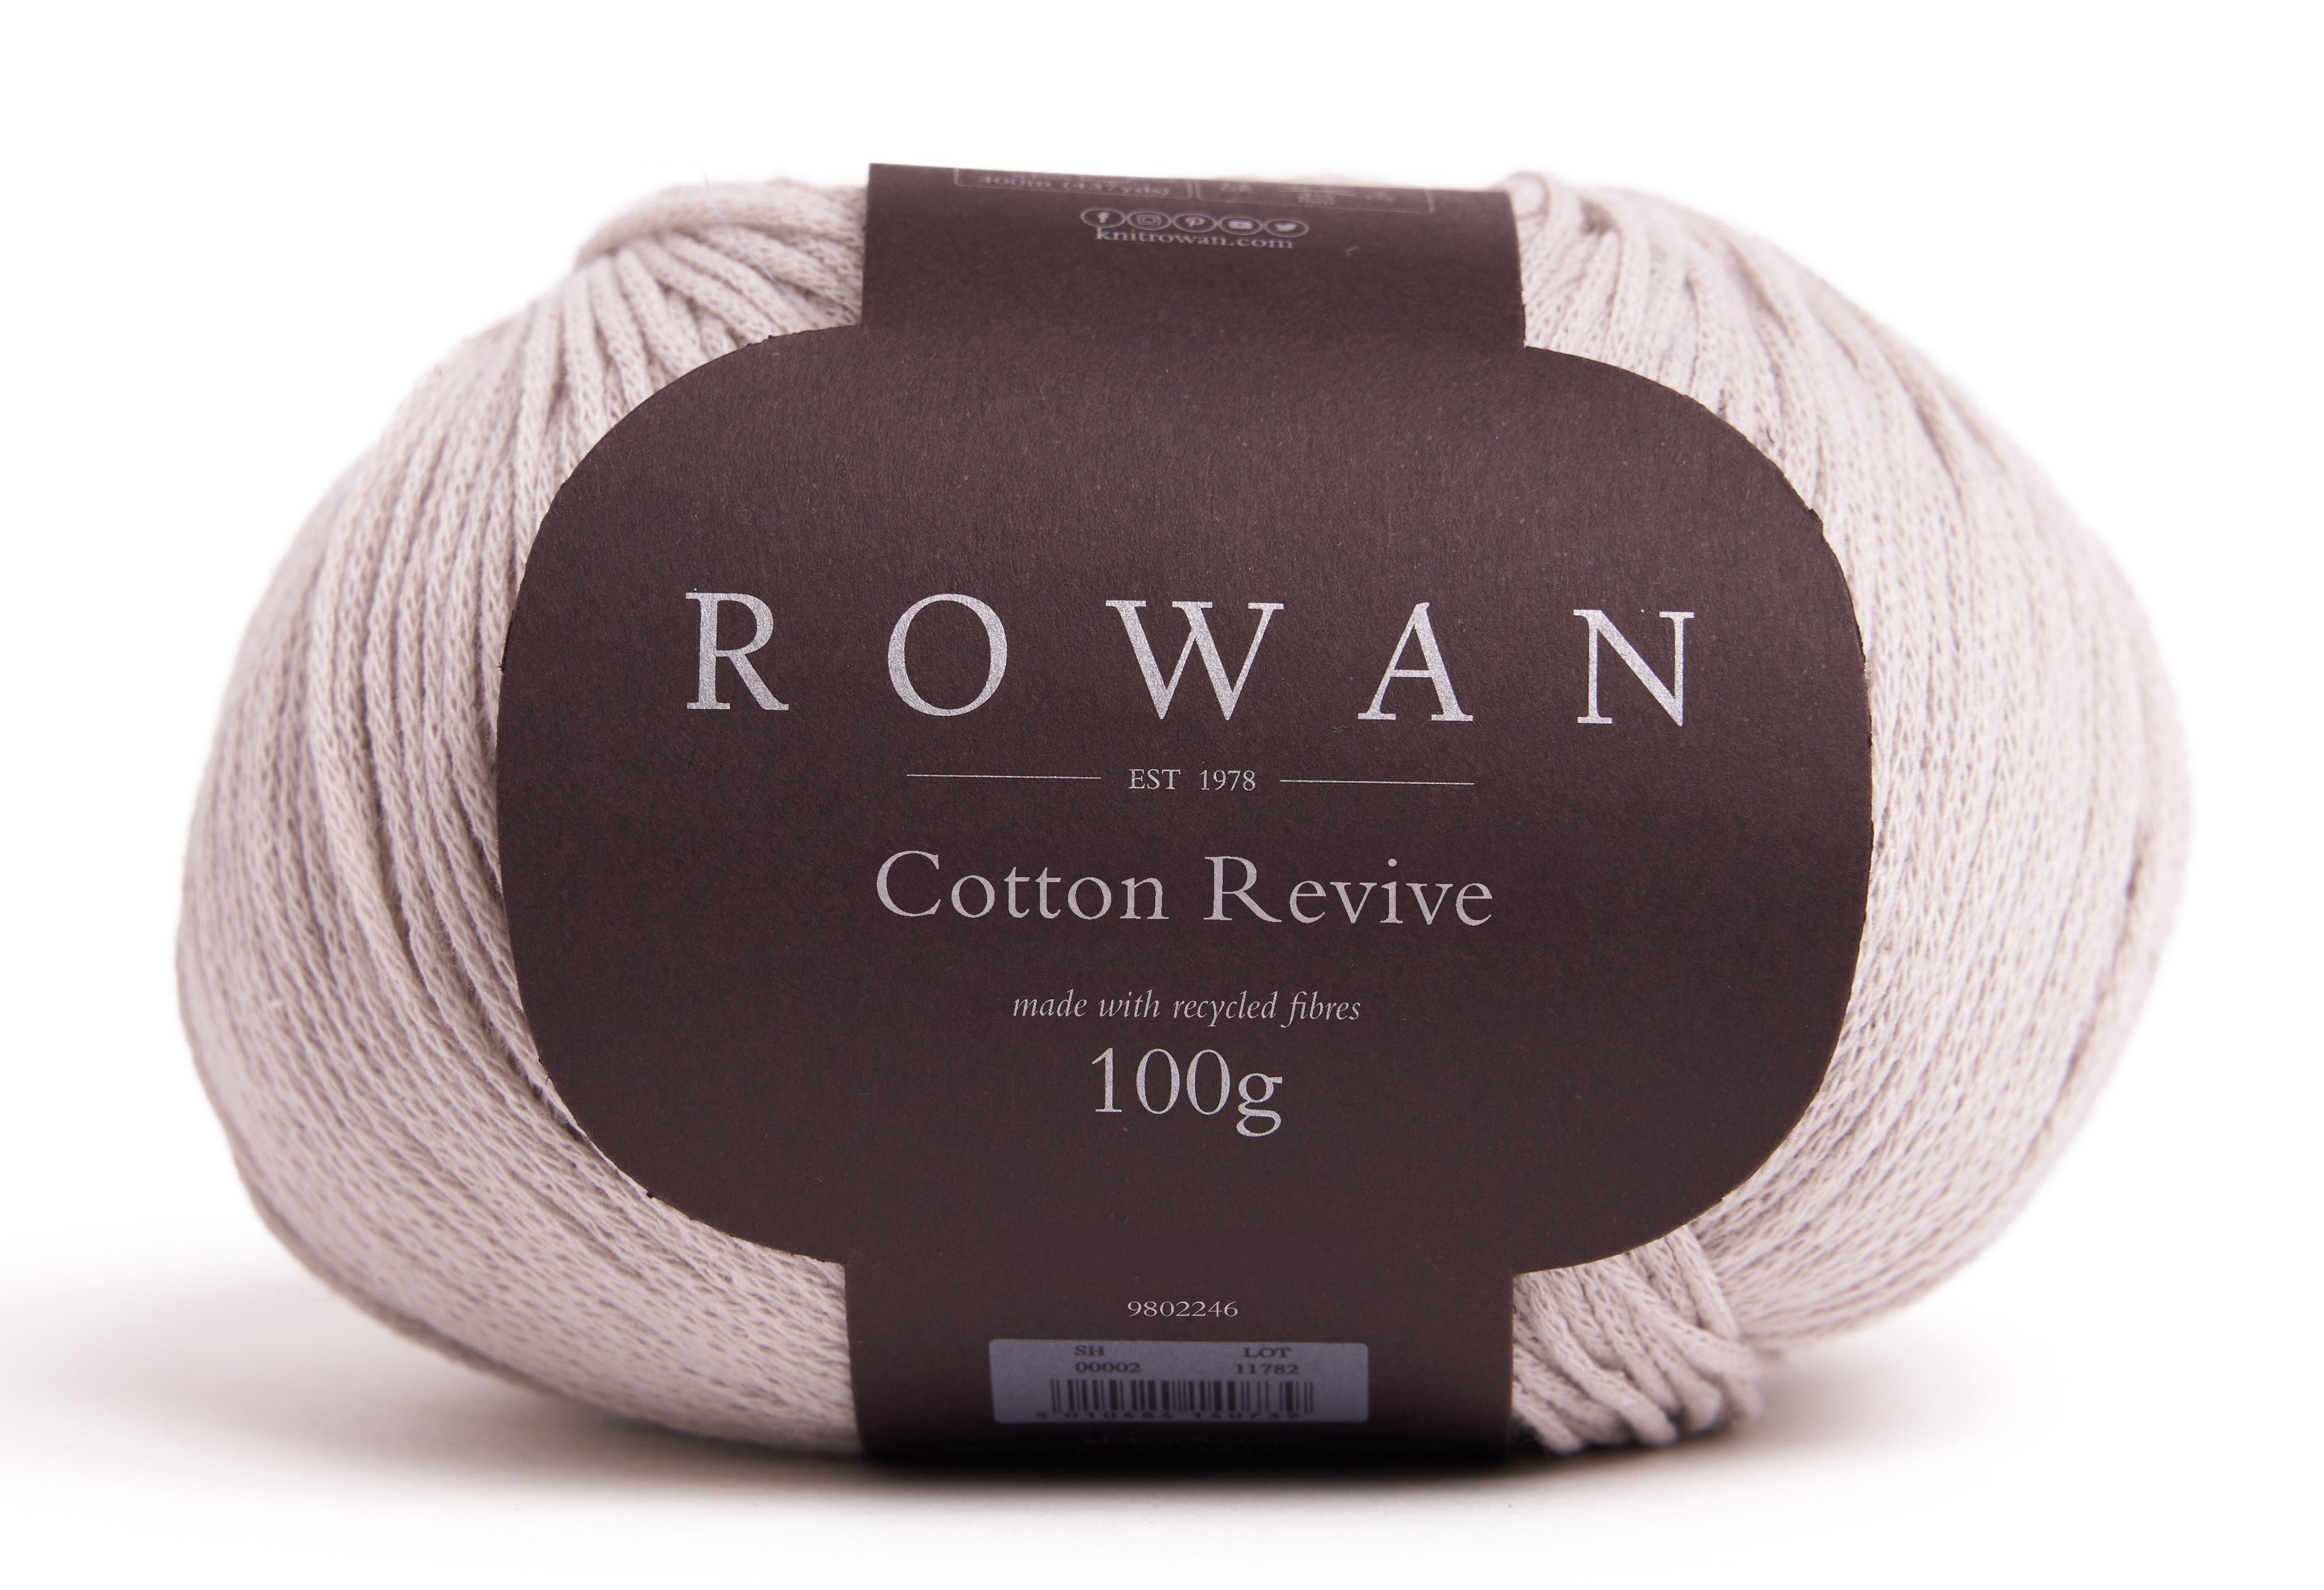 Cotton Revive